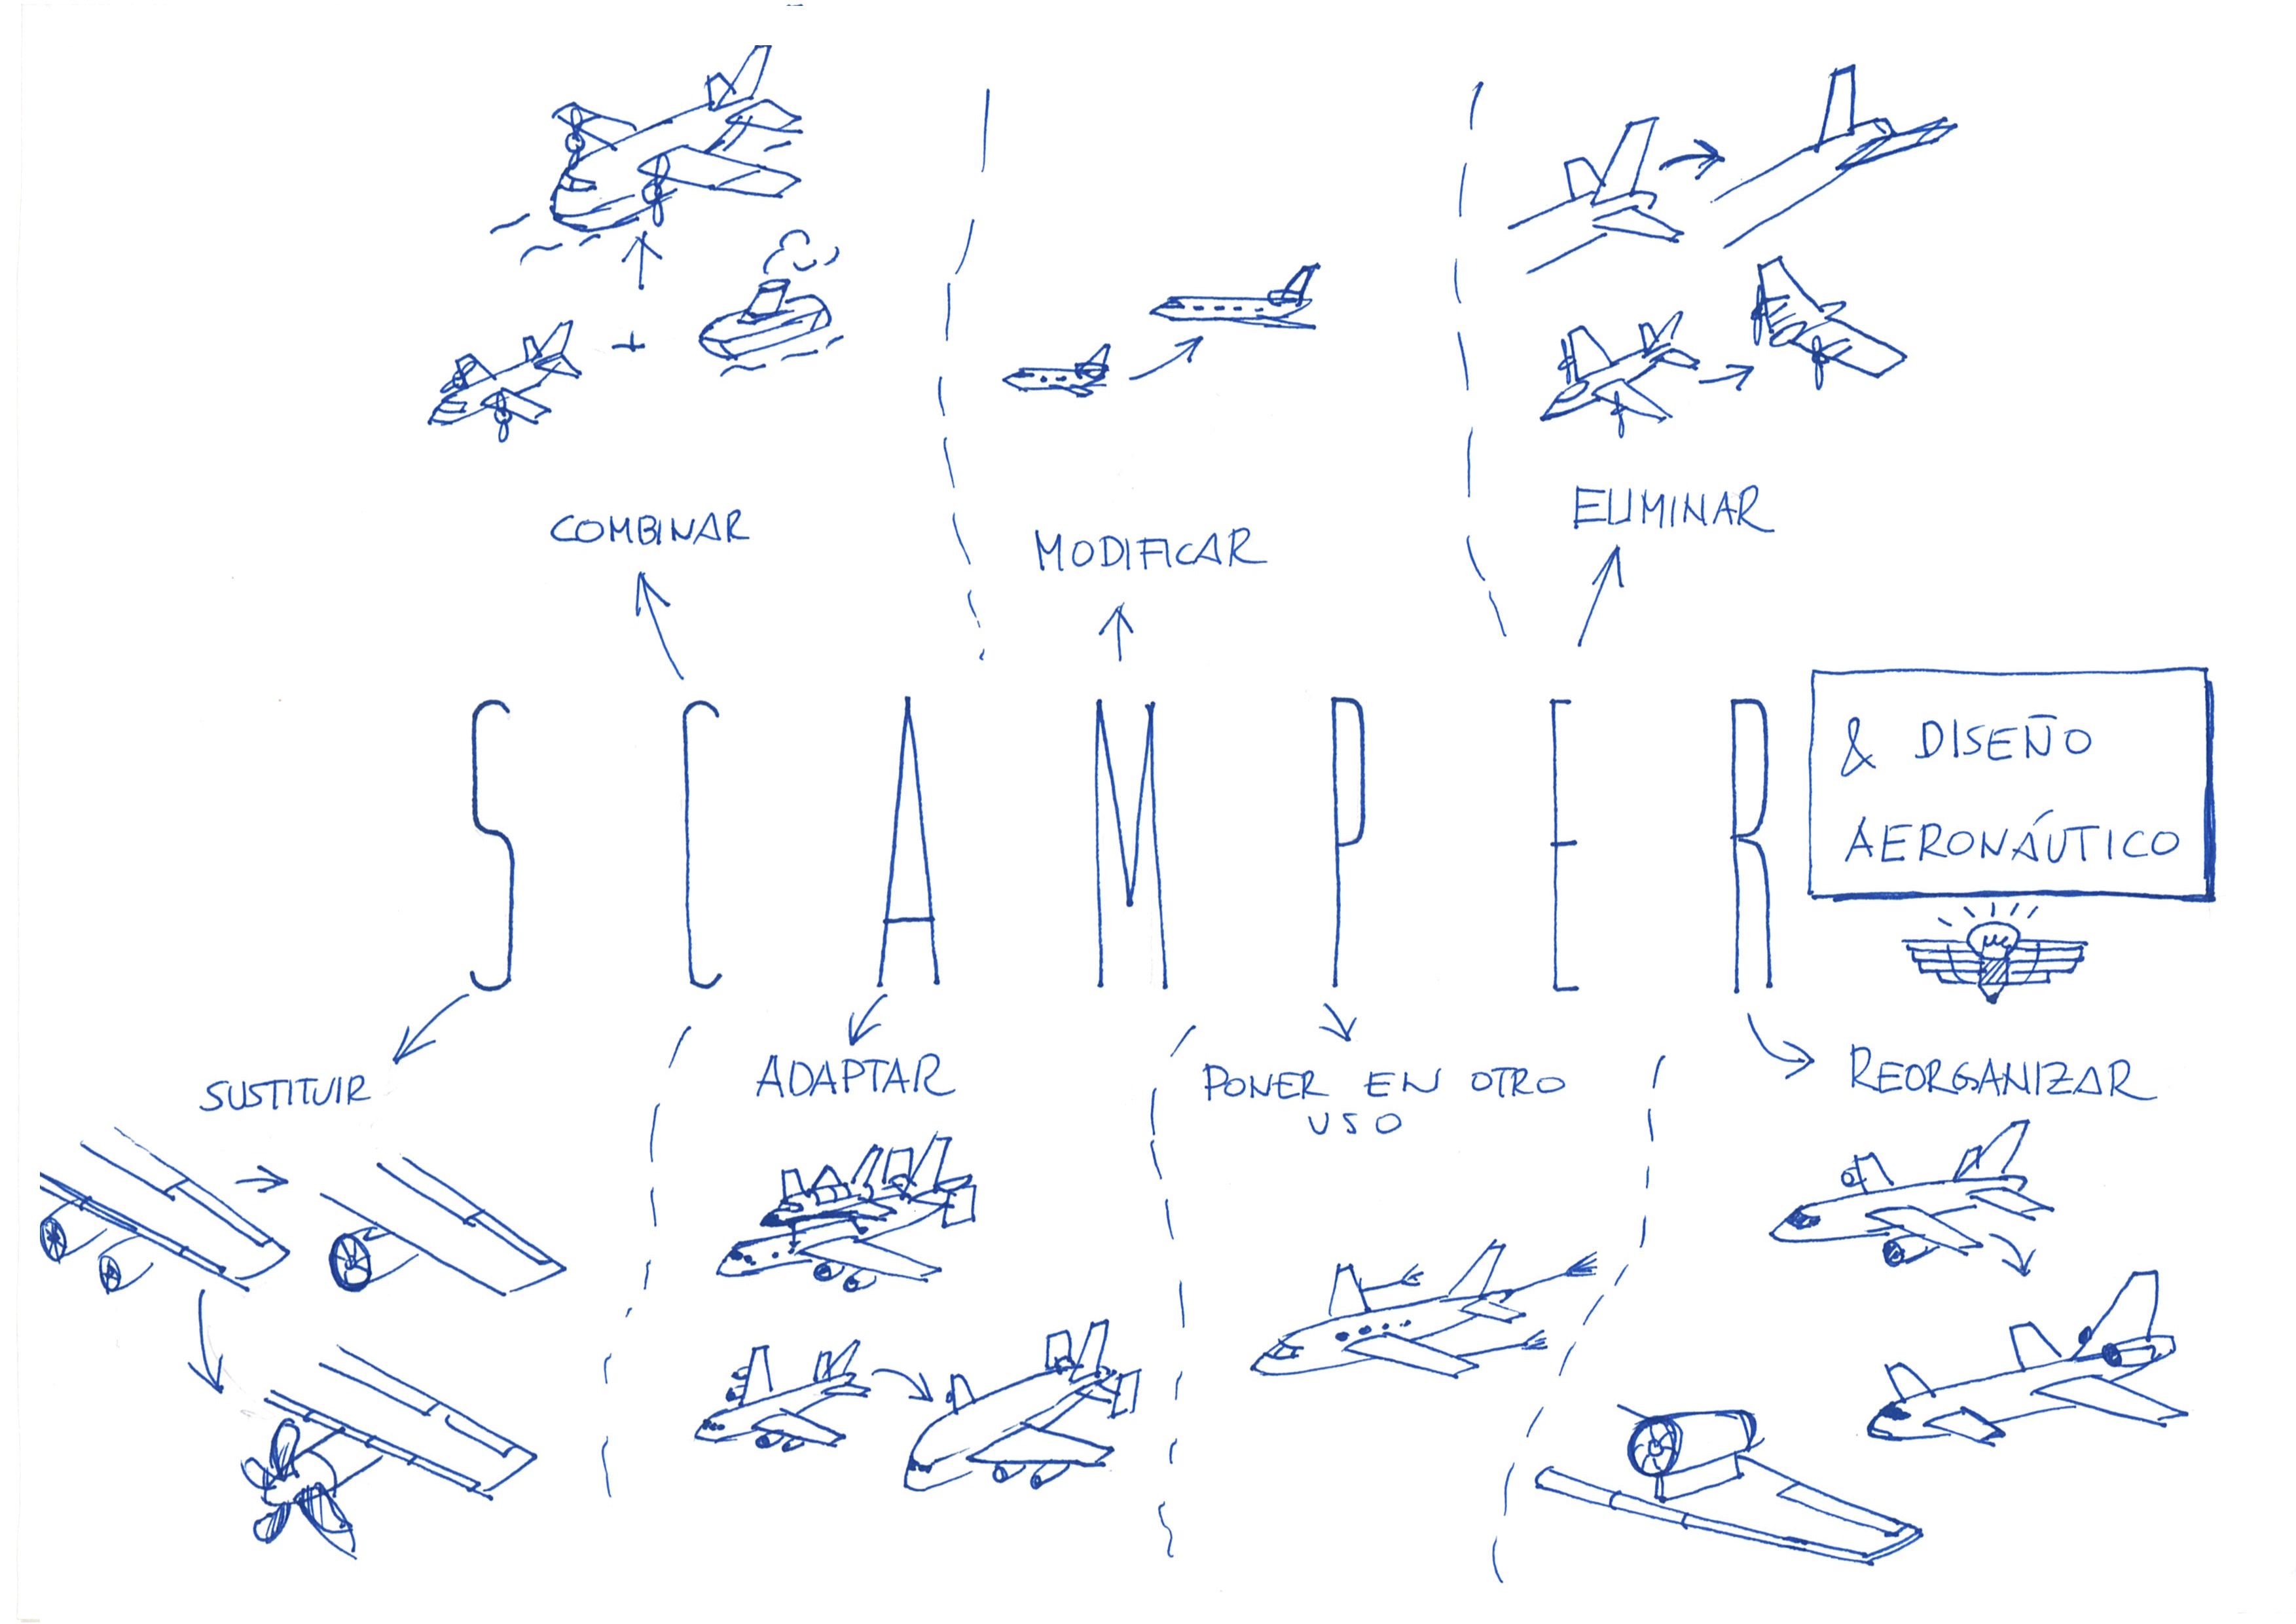 SCAMPER aplicado al diseño aeronautico